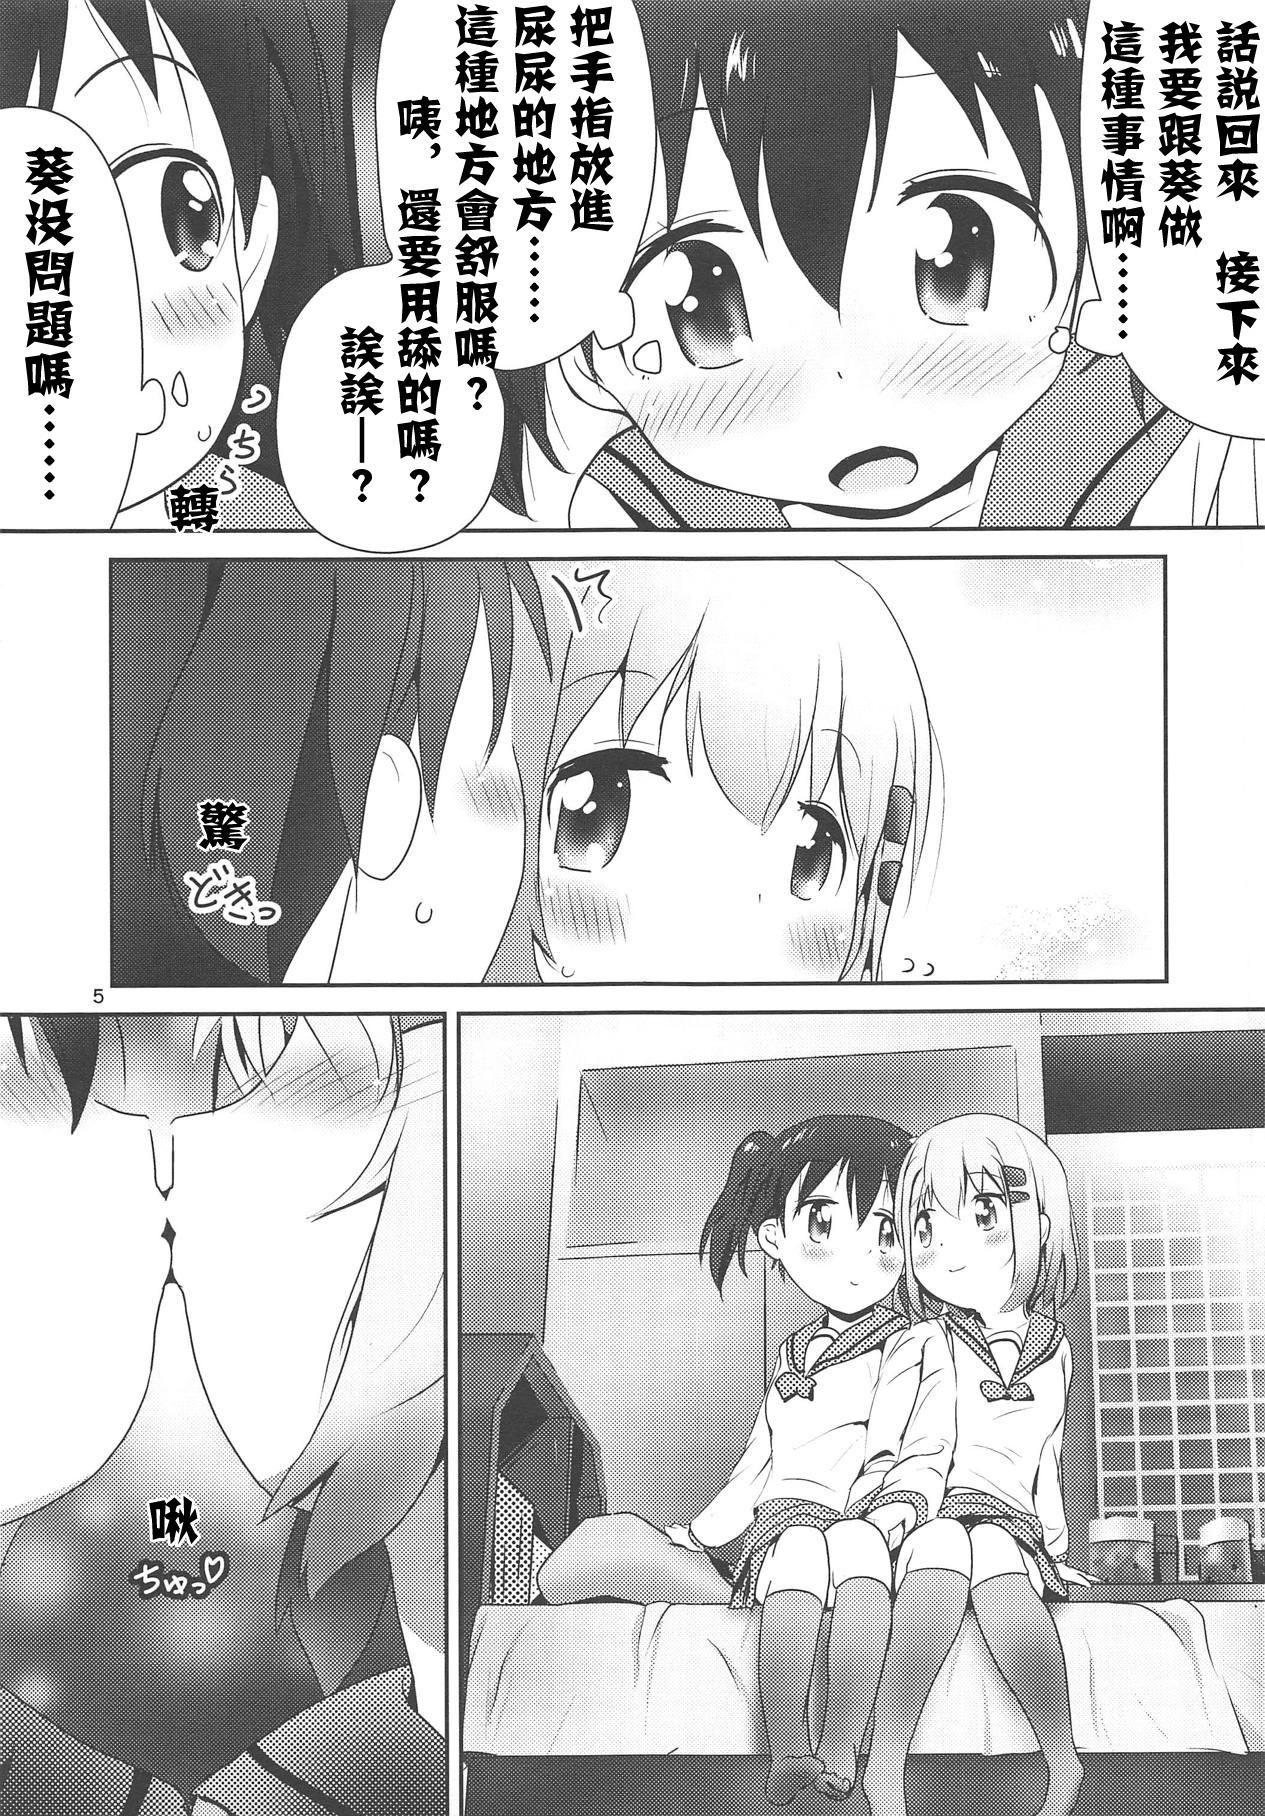 Ball Licking AoHina Yurix - Yama no susume Story - Page 6